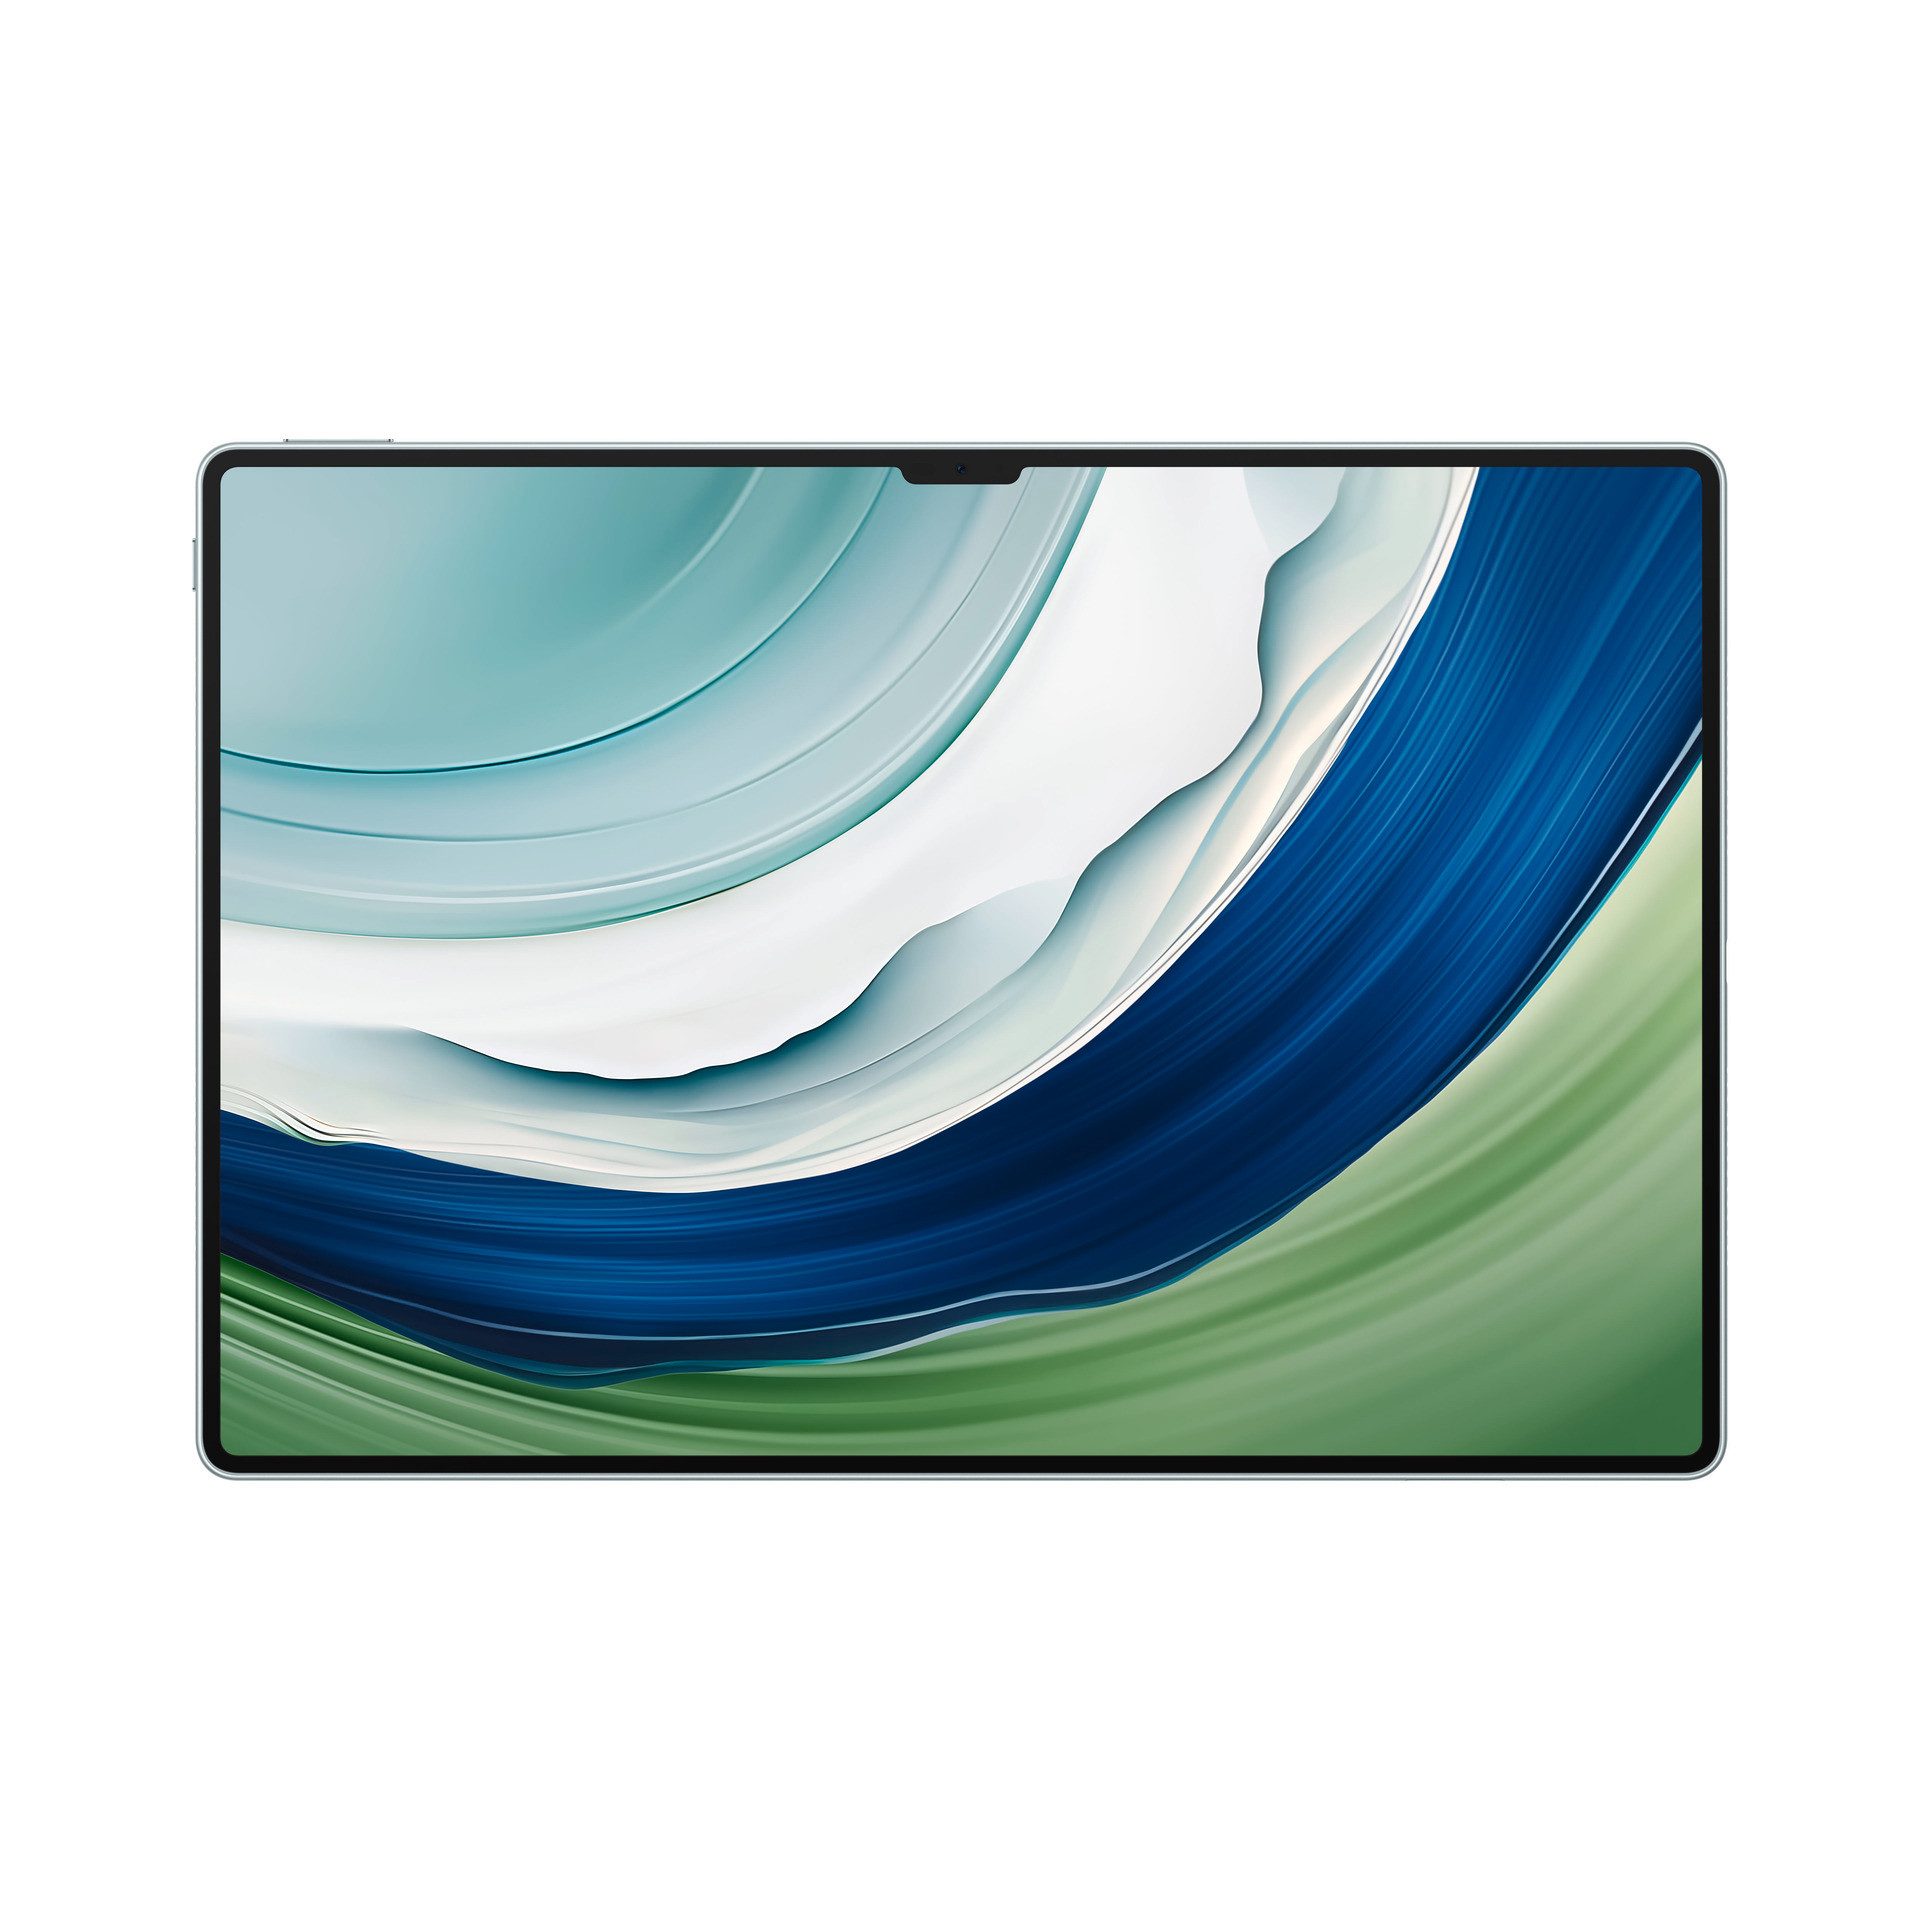 Huawei Tablet Matepad Pro 13.2 (Keyboard inbox), HarmonyOS